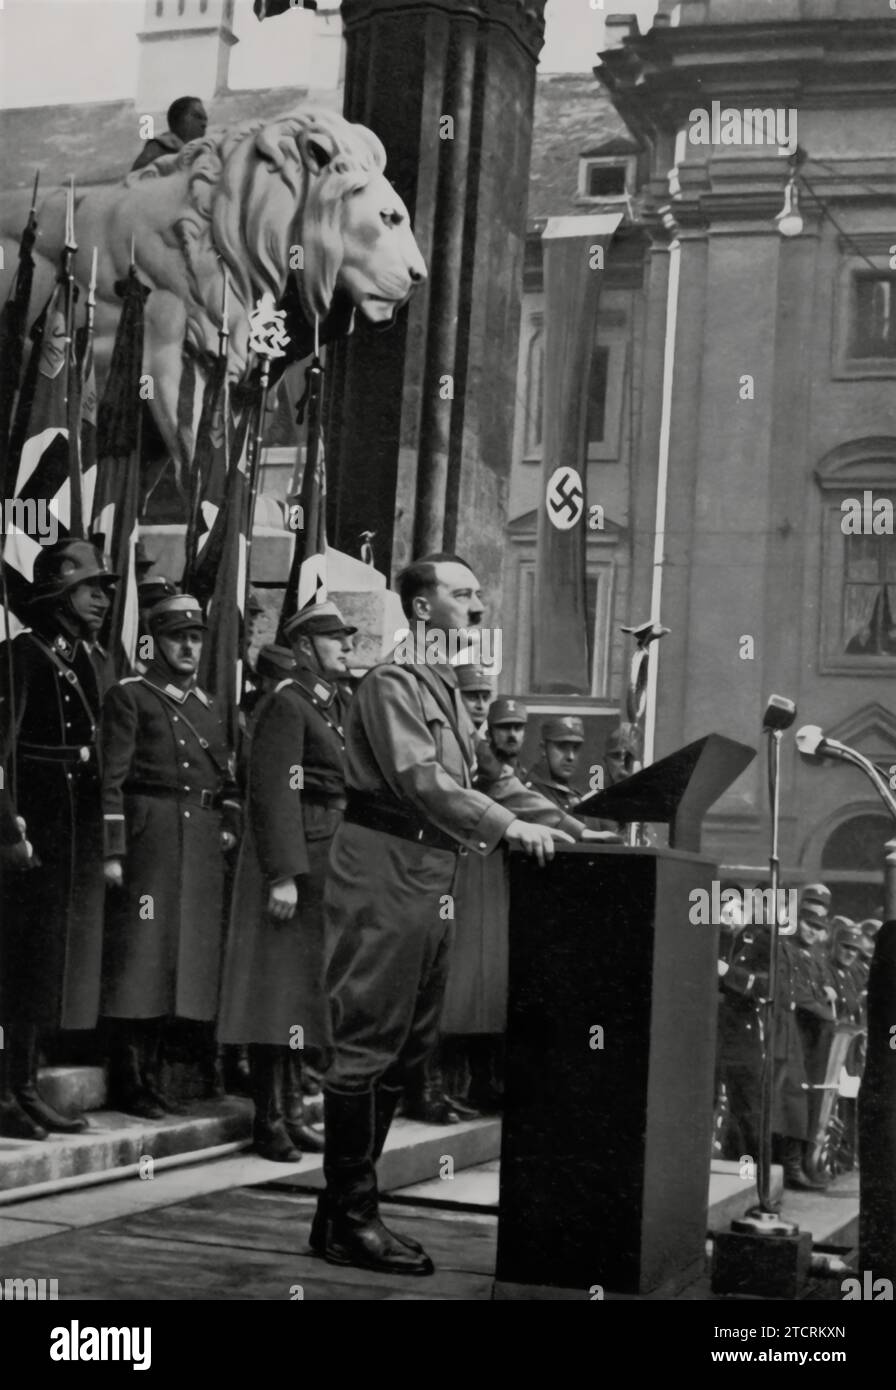 En novembre 1934 à Munich, Adolf Hitler est capturé parlant devant la Feldherrnhalle aux nouveaux membres de la Jeunesse Hitler et de la Ligue des filles allemandes. Cet événement a marqué un moment important, car Hitler s'est adressé à la jeune génération qui était intronisée dans ces organisations nazies. La Feldherrnhalle, lieu symbolique à Munich, a fourni une toile de fond historiquement résonnante pour cette occasion. Banque D'Images